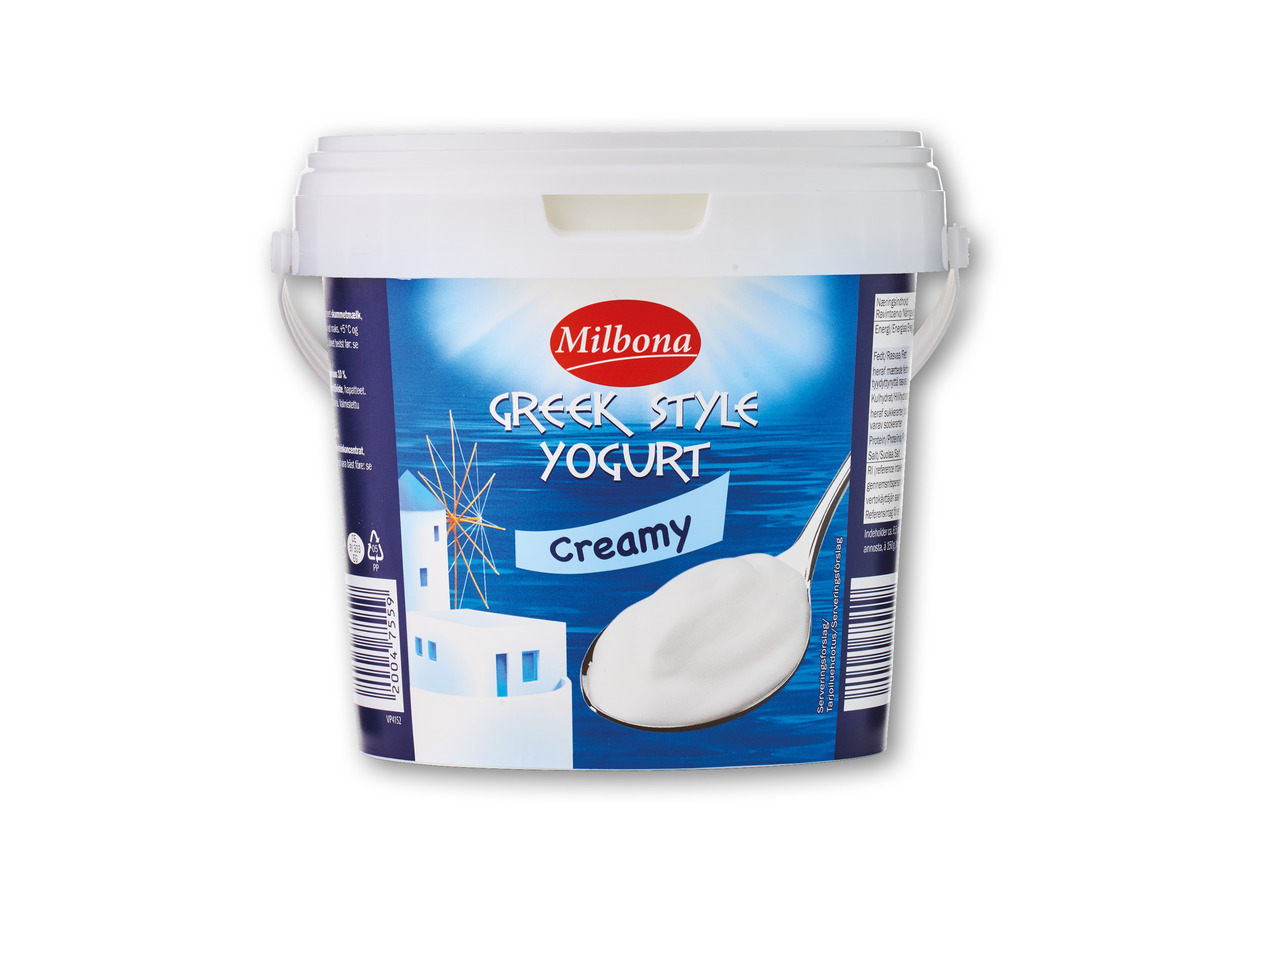 MILBONA Græskinspireret yoghurt